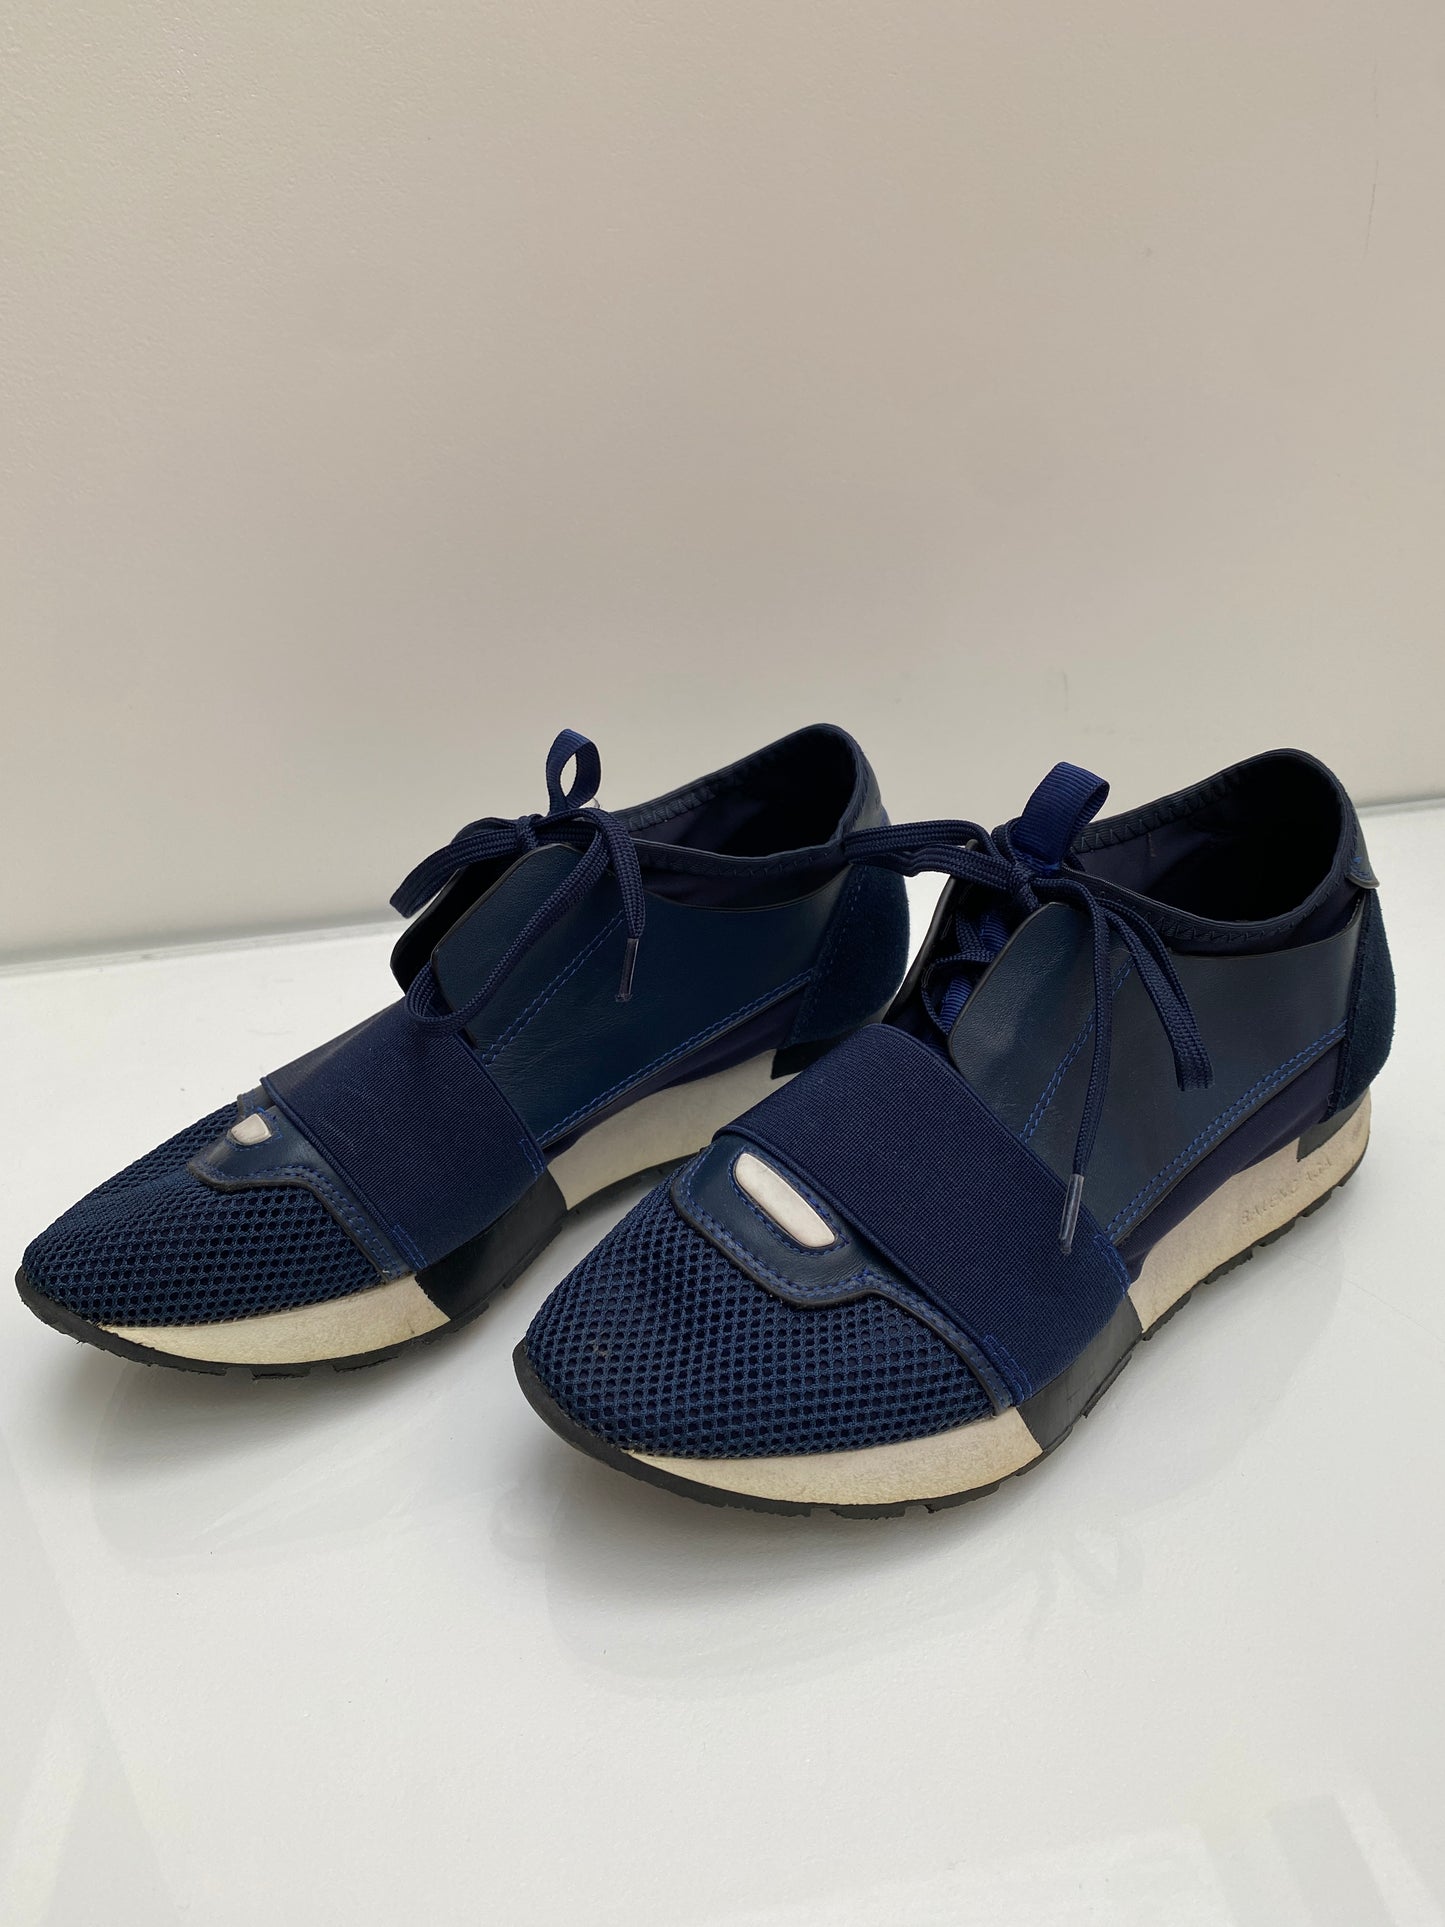 Balenciaga navy sneakers, Sz 37